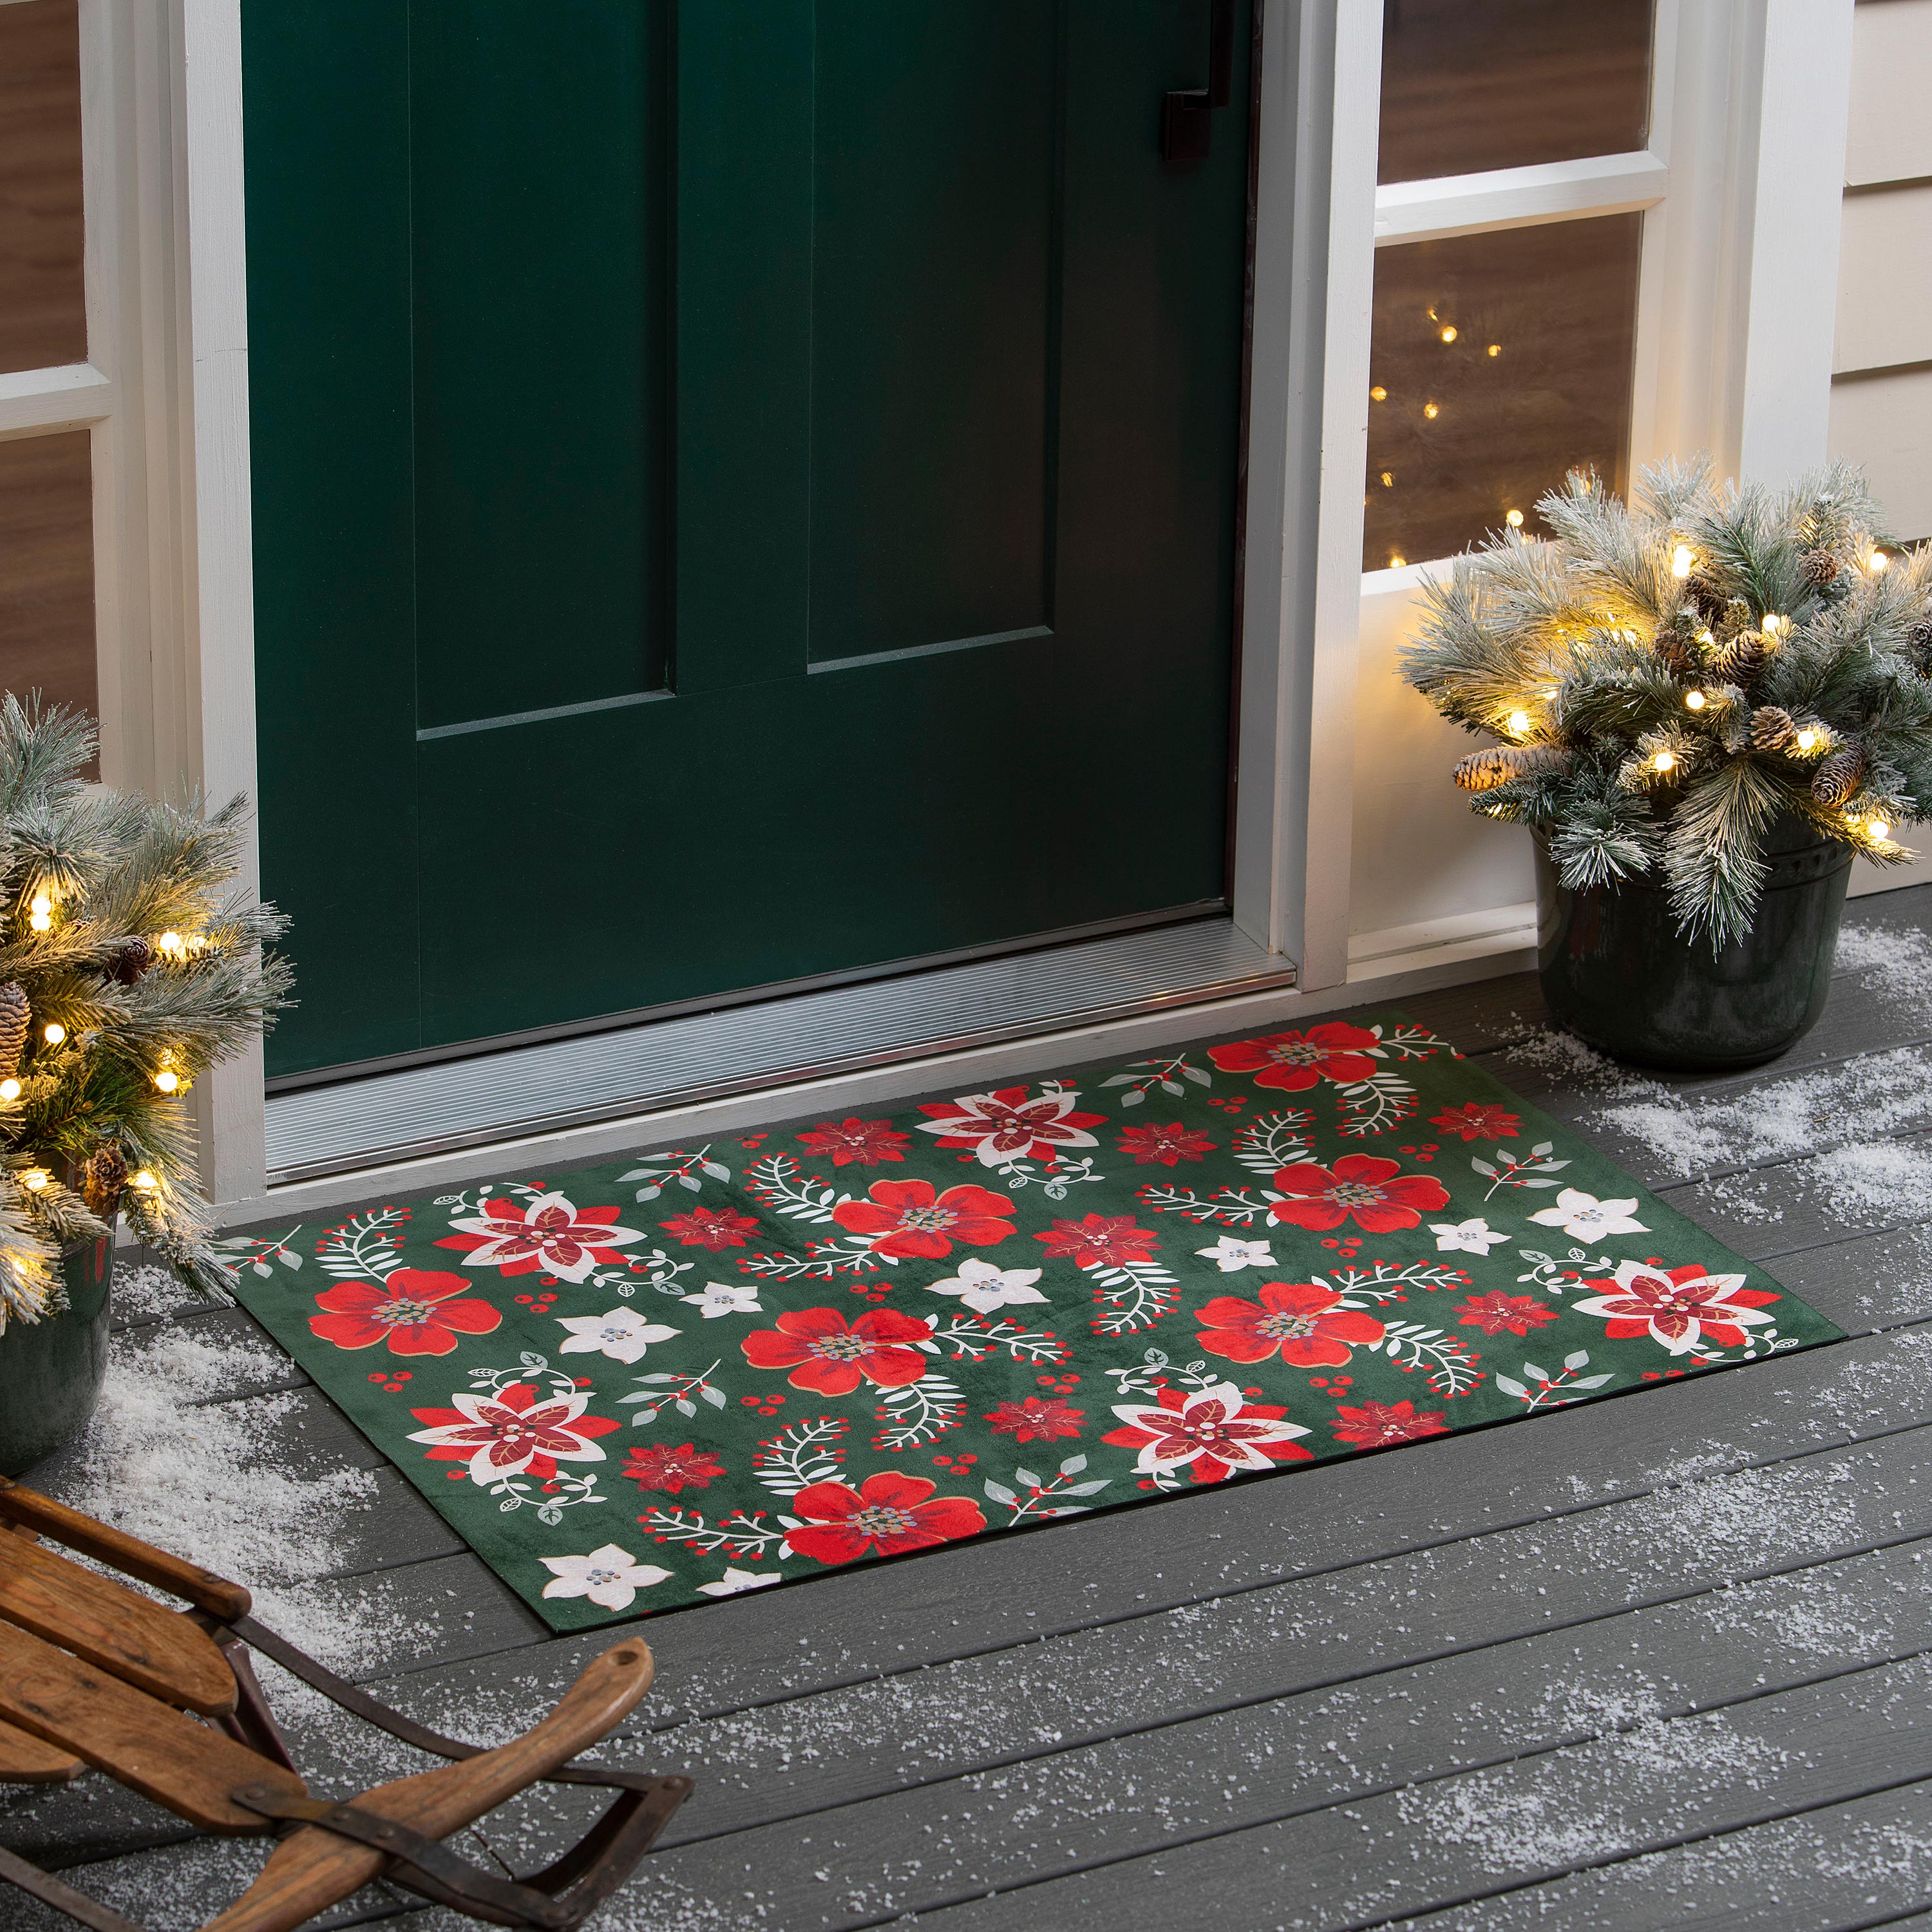 Christmas Doormat for Front Porch, Winter Doormat, Holiday Hostess Gift, Front  Door Mat, Holiday Door Mat, Christmas Decor Outdoor 